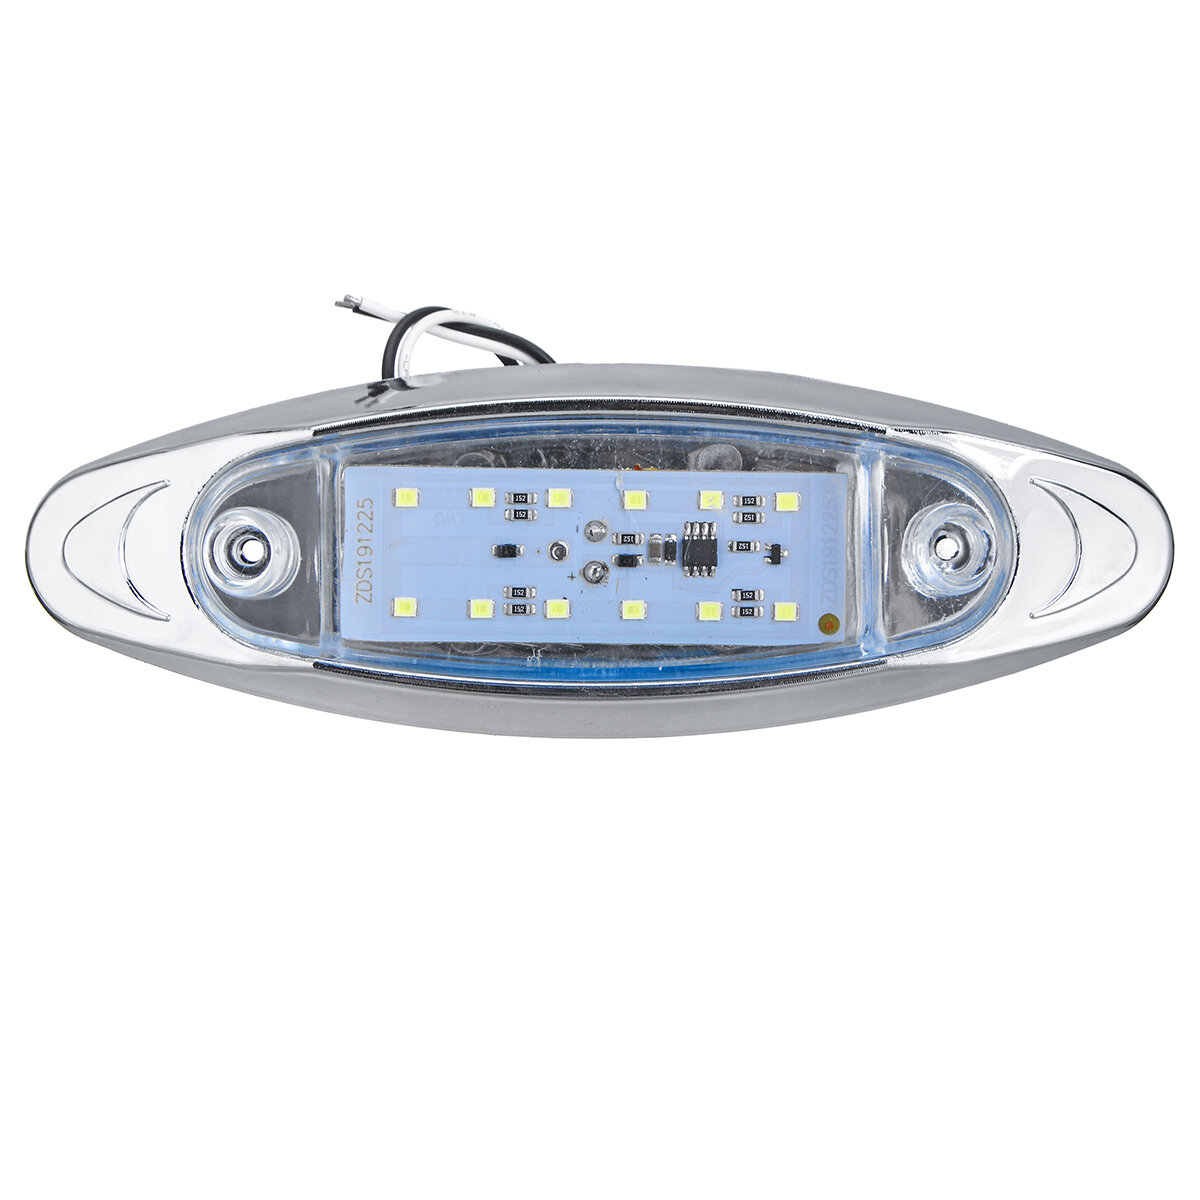 

4Pcs White 24V LED Side Marker Light Flash Strobe Emergency Warning Lamp For Boat Car Truck Trailer